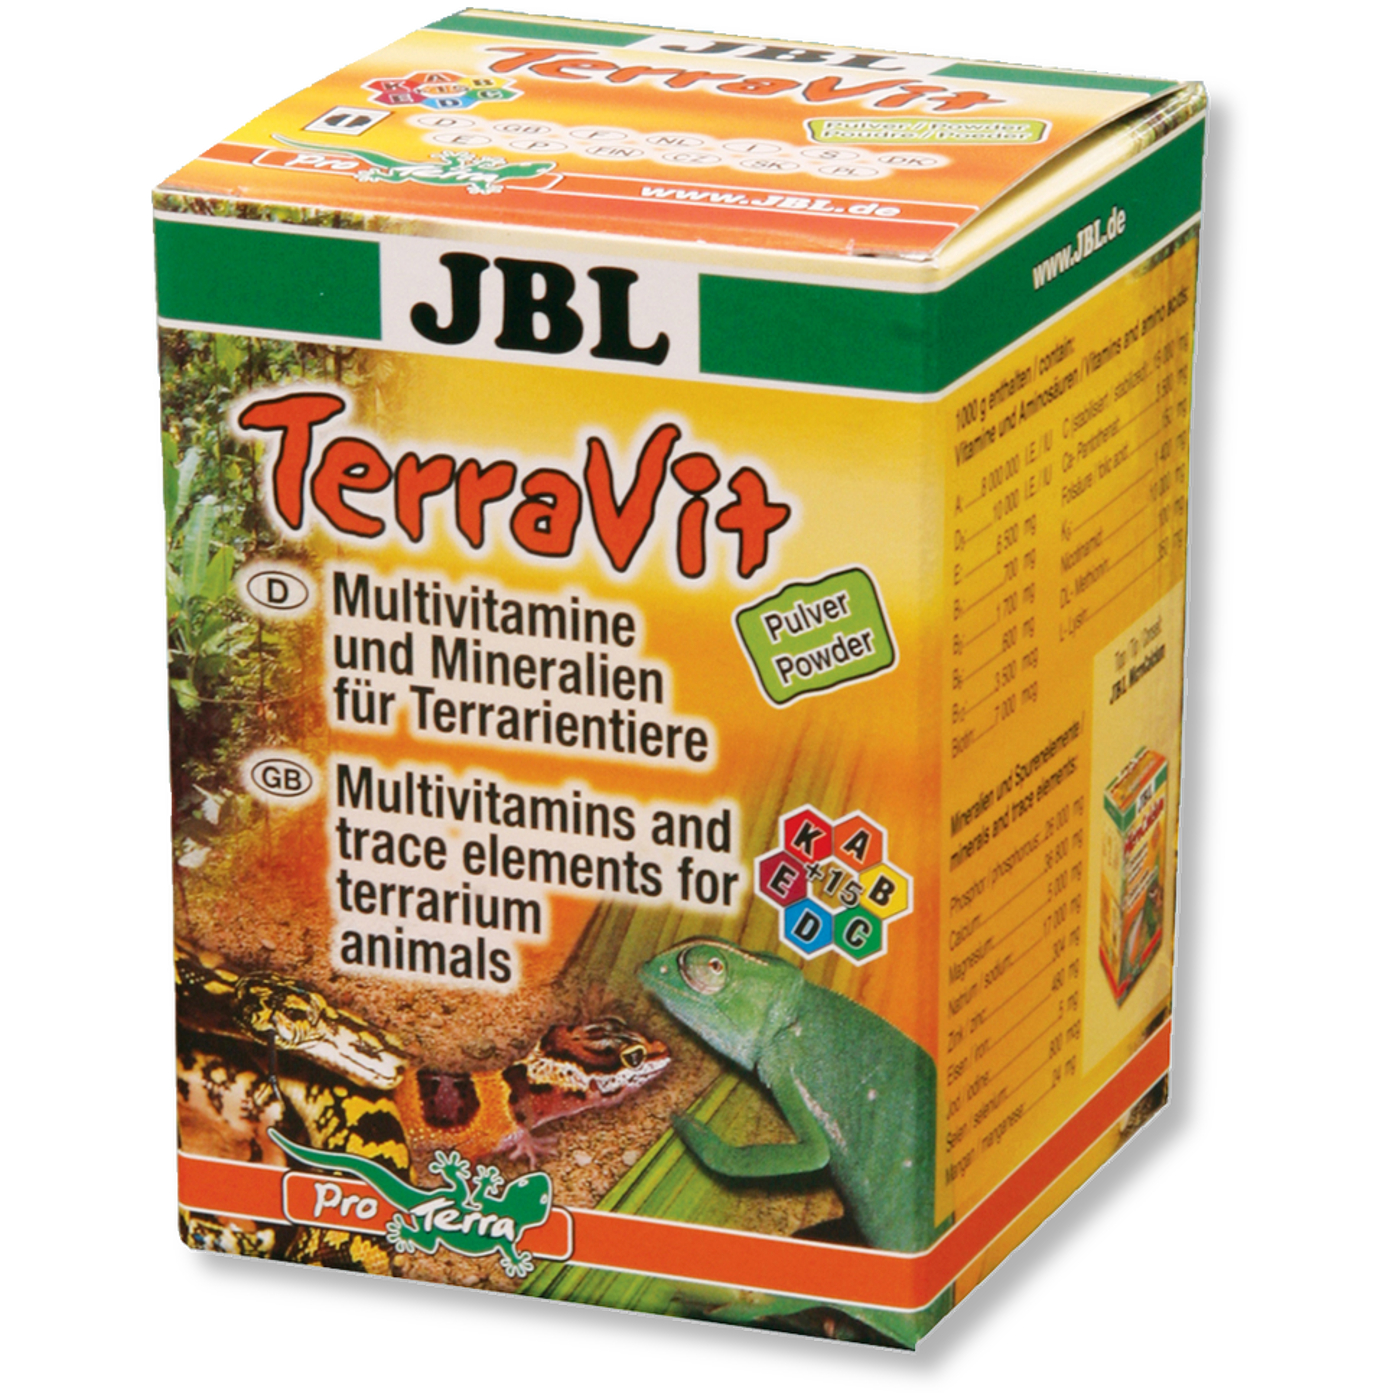 JBL TerraVit 100 g Pulverform (Multivitamin, Spurenelemente) 